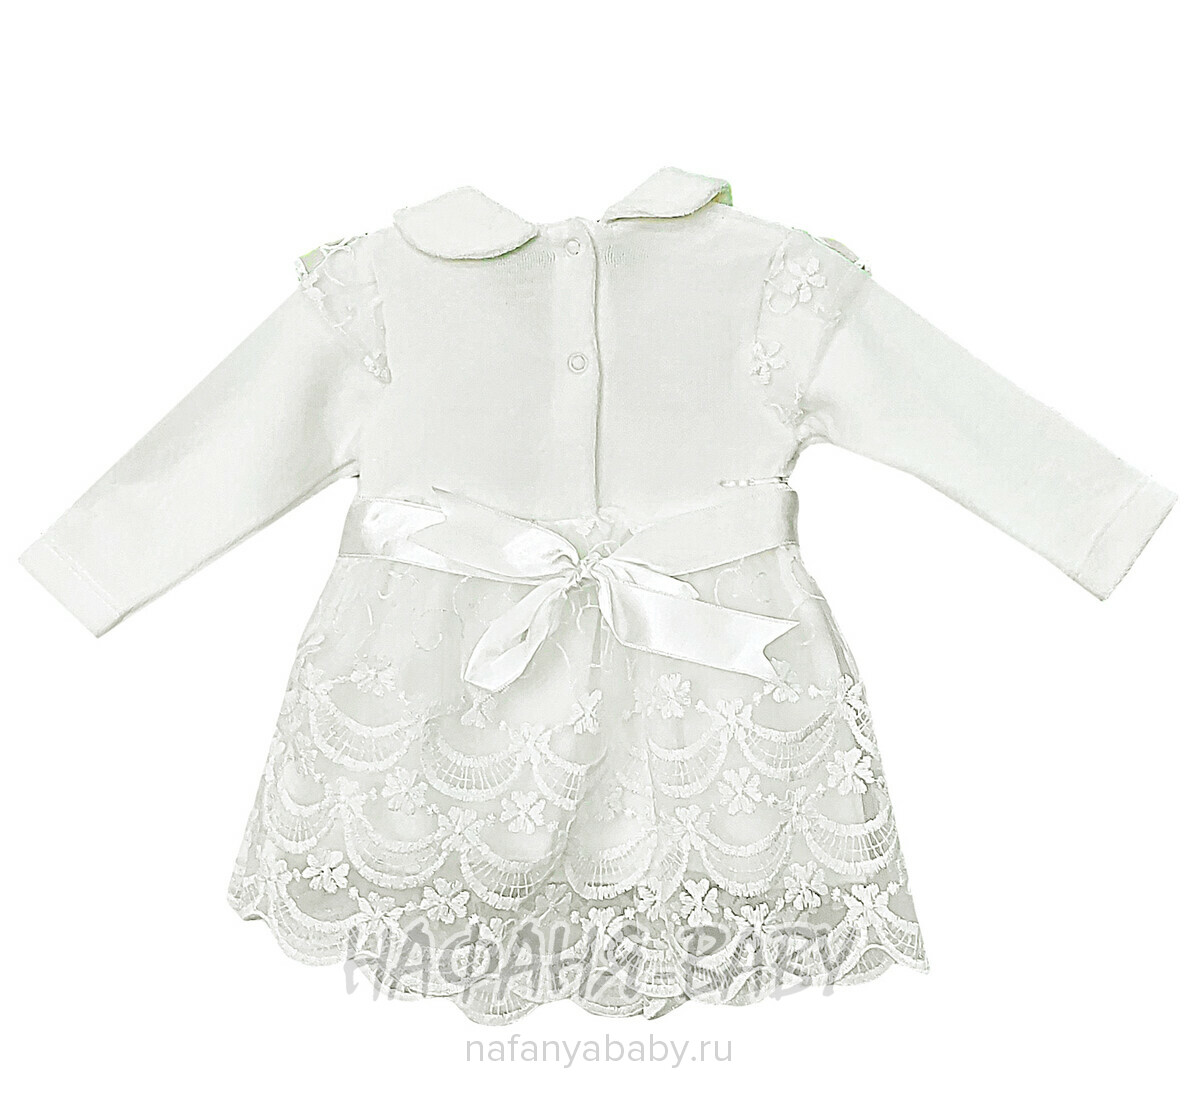 Детский костюм для новорожденных FINDIK арт: 69002, 0-12 мес, цвет молочный, оптом Турция